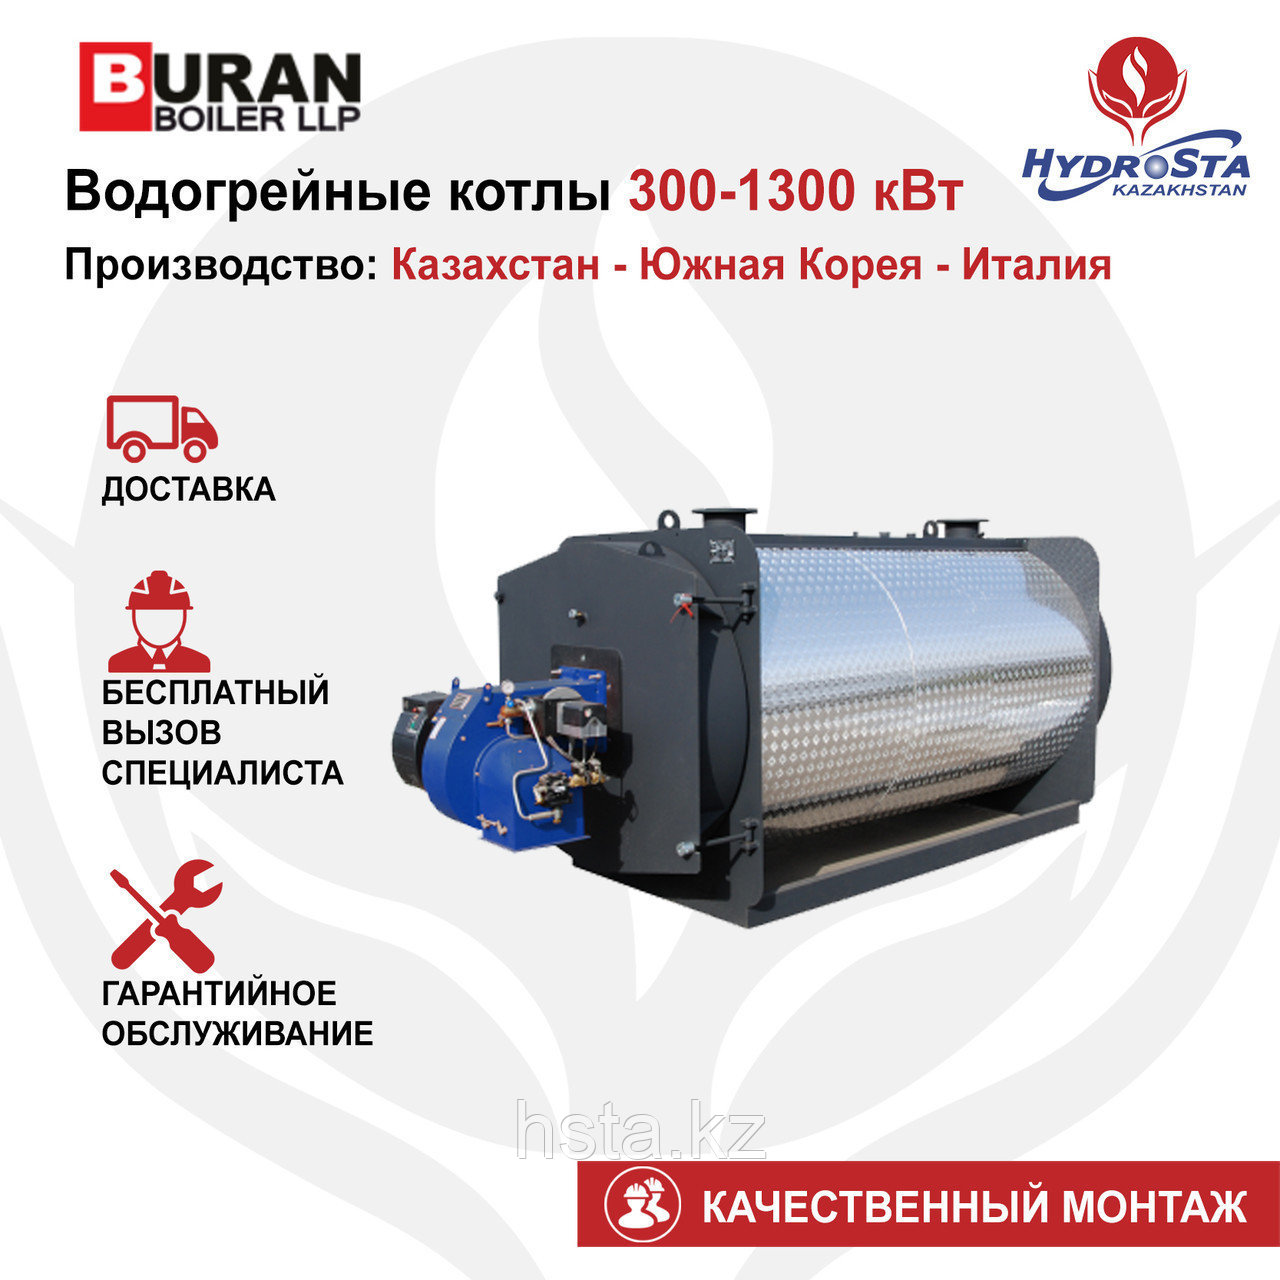 Котел одноконтурный Cronos BB-850 (Buran Boiler) 850кВт (цена без горелки)